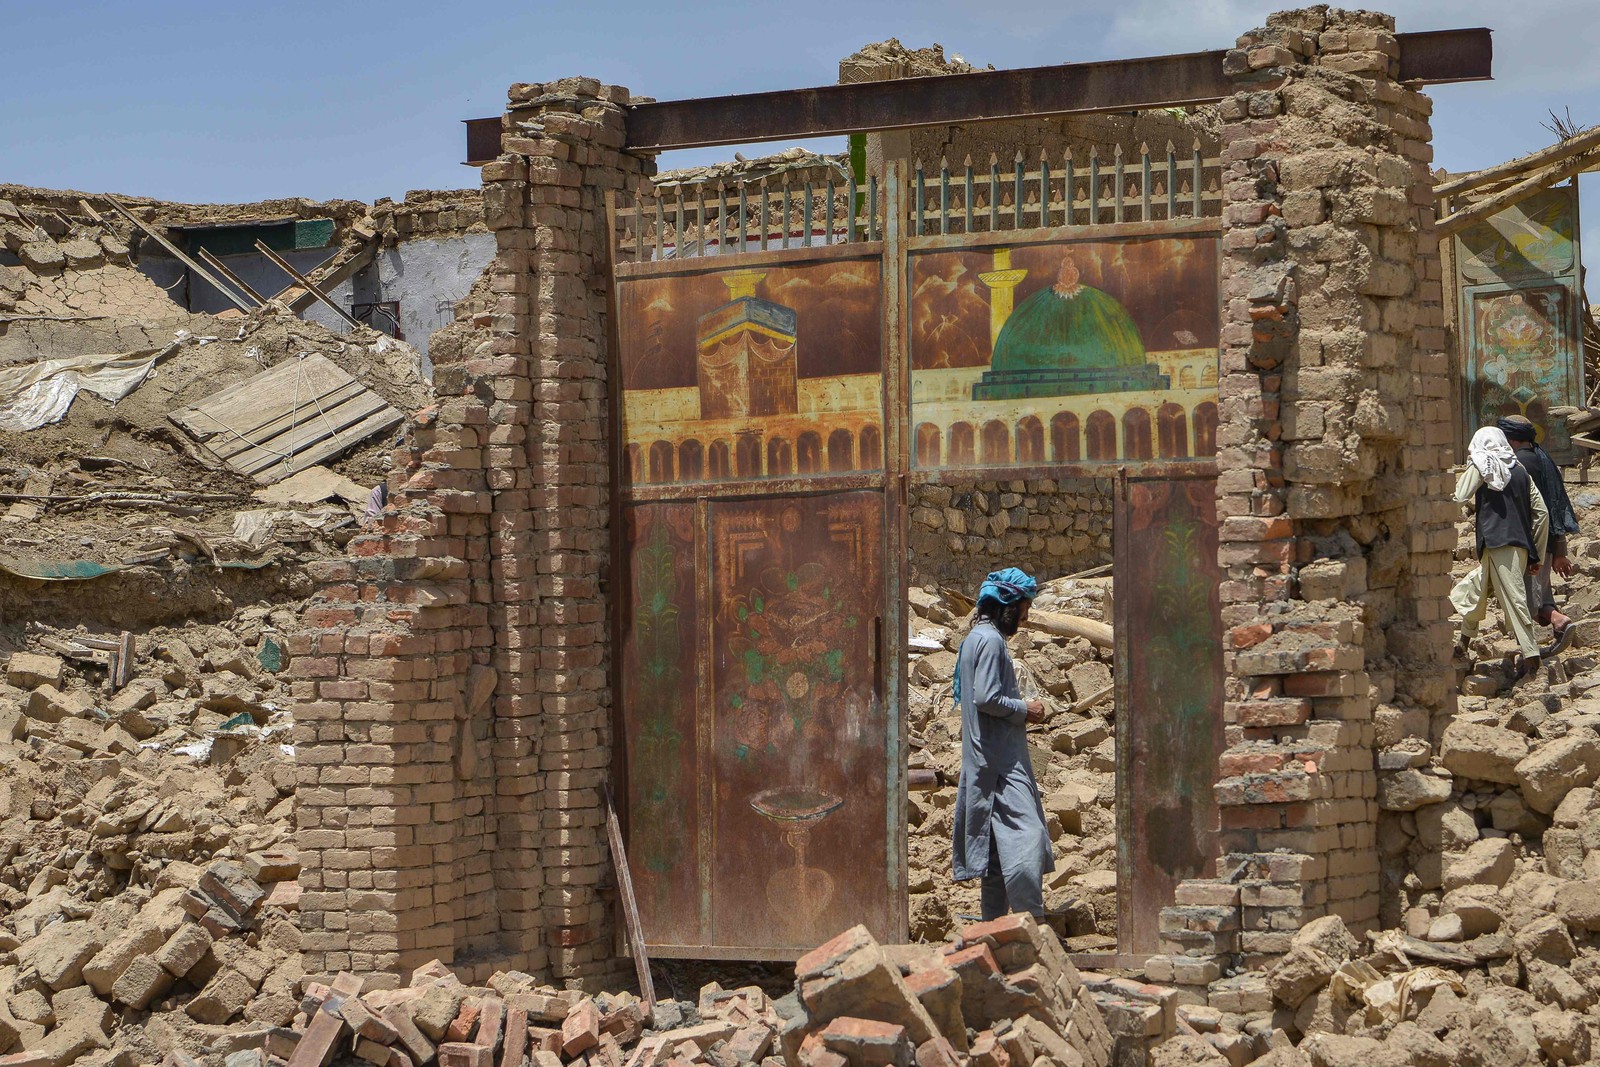 Afegão caminha por ruína na província de Paktika, depois do terremoto que matou mais de mil pessoas no país  — Foto: SAHEL ARMAN / AFP